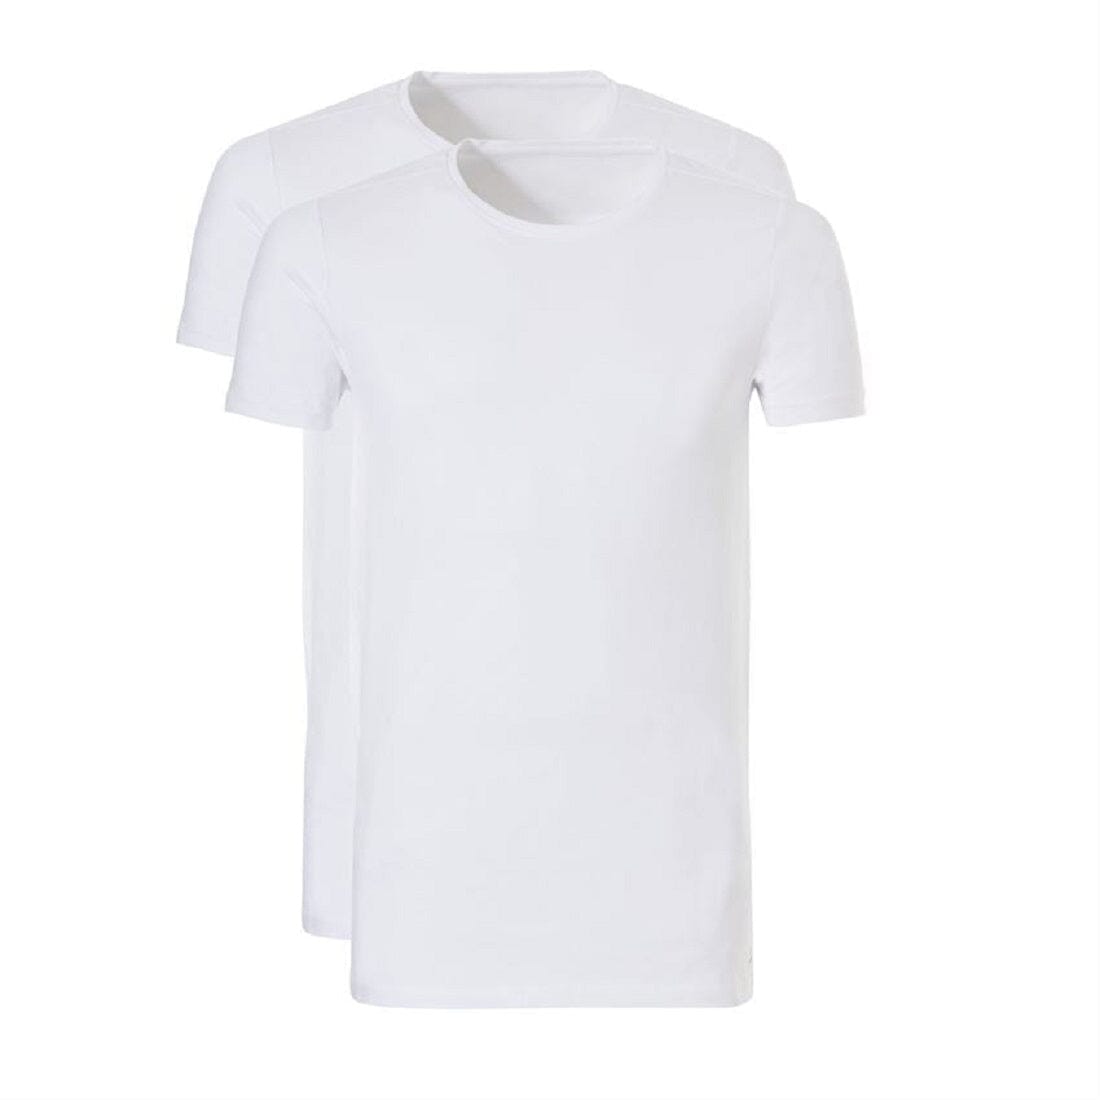 Ten Cate - 30848 - Basic T-Shirt Long - White Shirt Ten Cate 